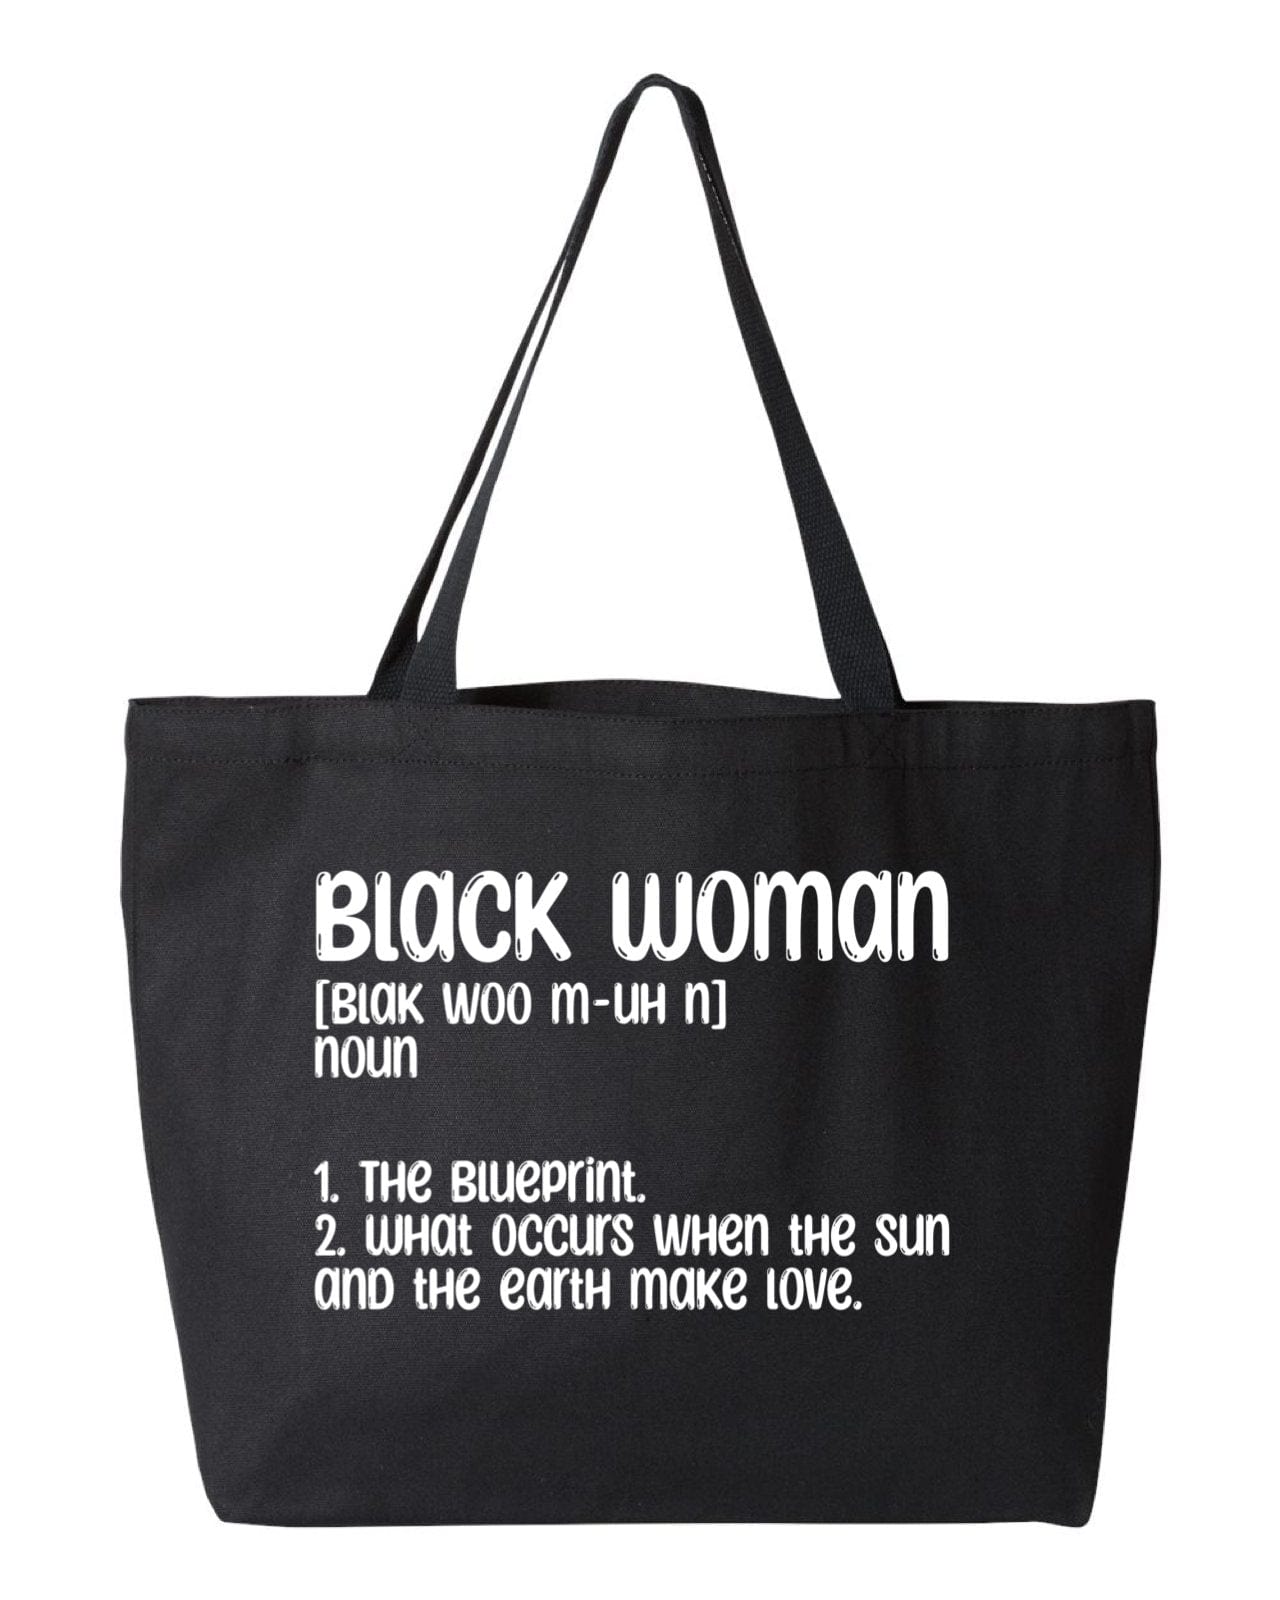 InsensitiviTees™️ Tote Bag Black Woman Burlap Tote